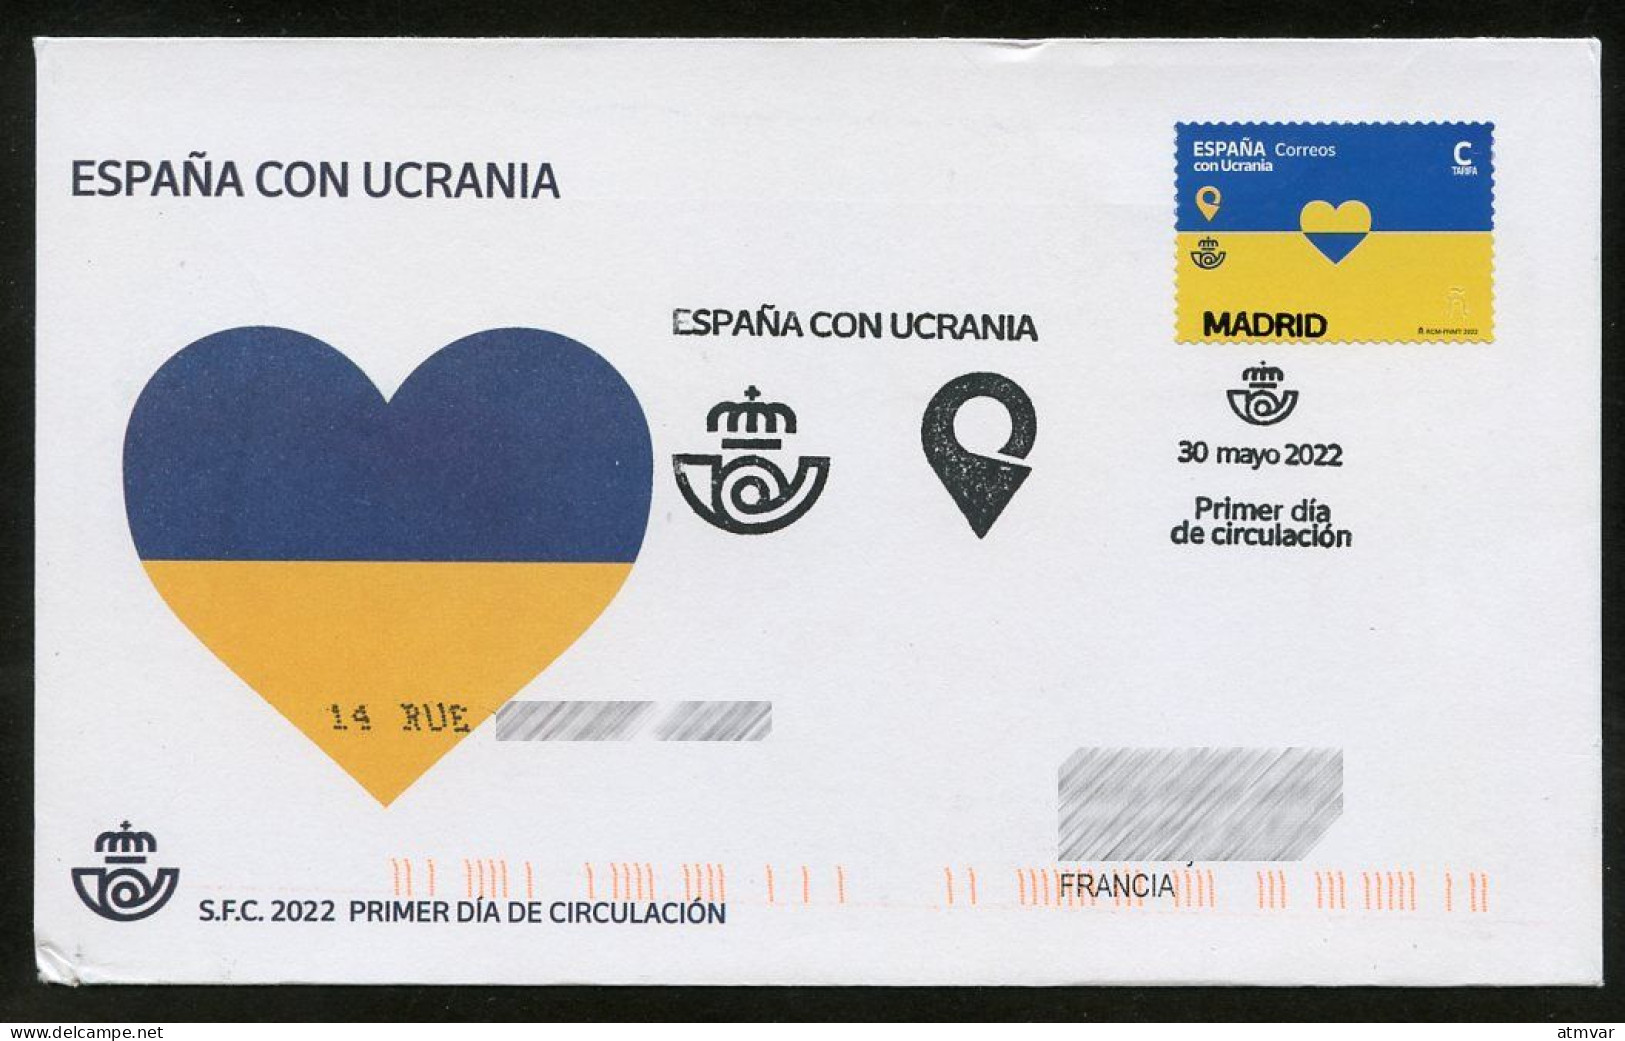 ESPAÑA (2022) ESPAÑA CON UCRANIA, Spain With Ukraine, Correos & Ukrposhta, Heart, Coeur, Corazón -First Day Cover France - FDC